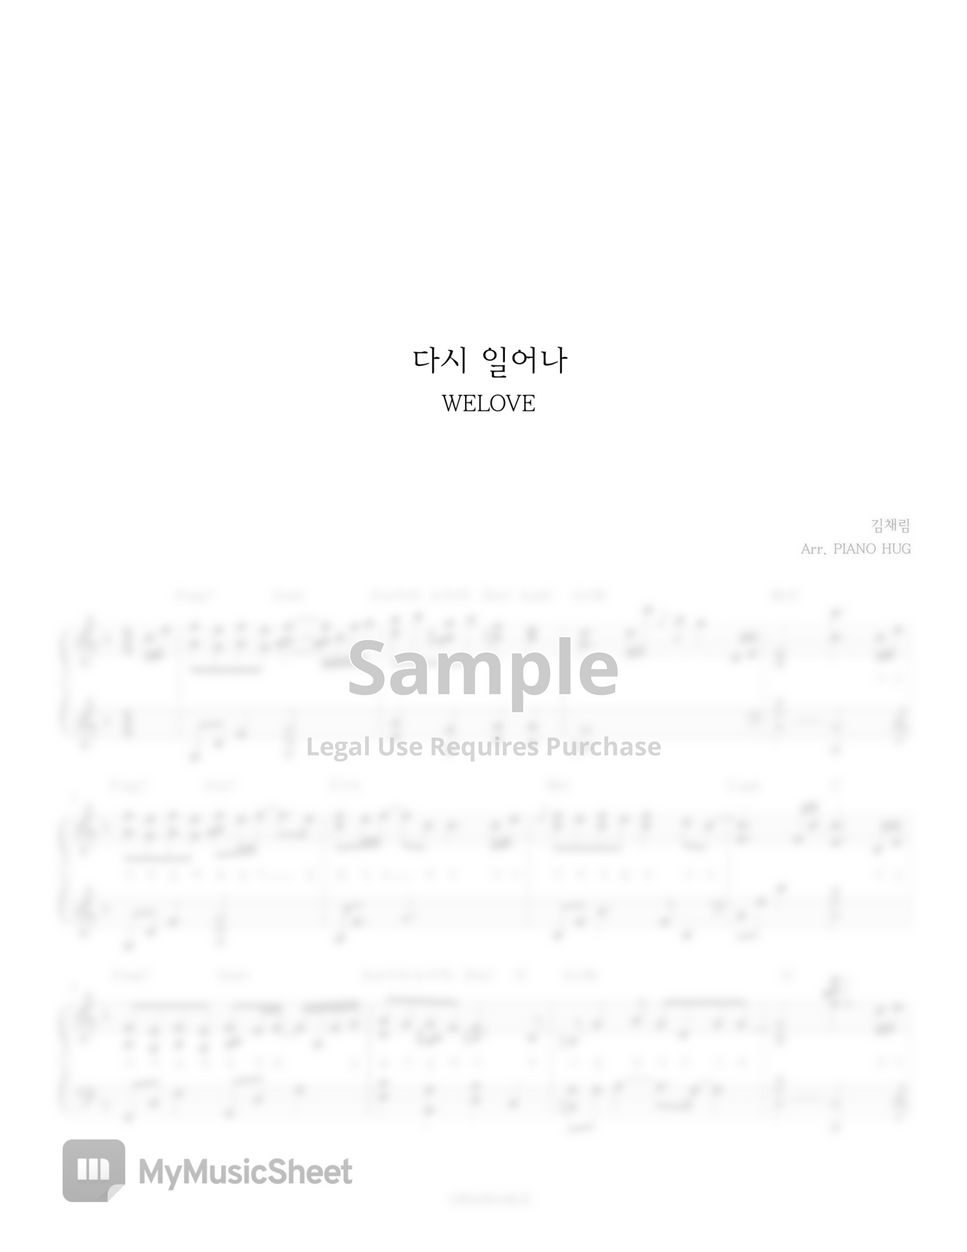 WELOVE (Kim Chae Rim) - 다시 일어나 by Piano Hug